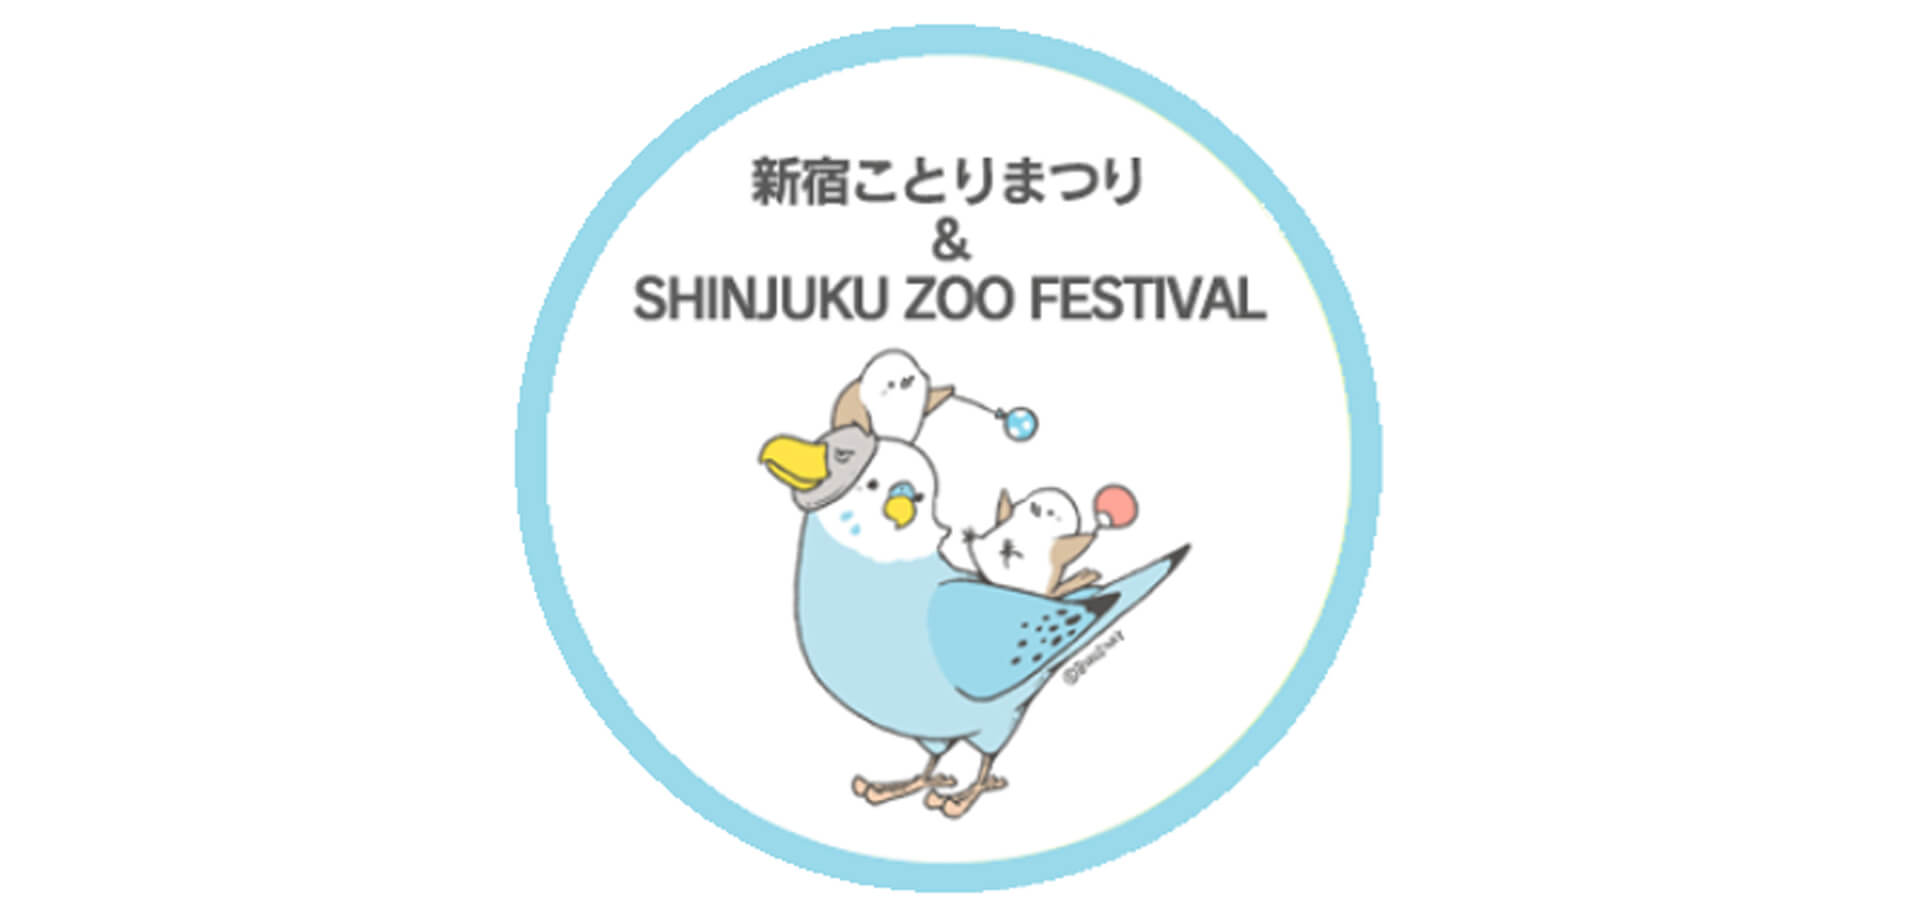 「ことりまつり」・「SHINJUKU ZOO FESTIVAL」